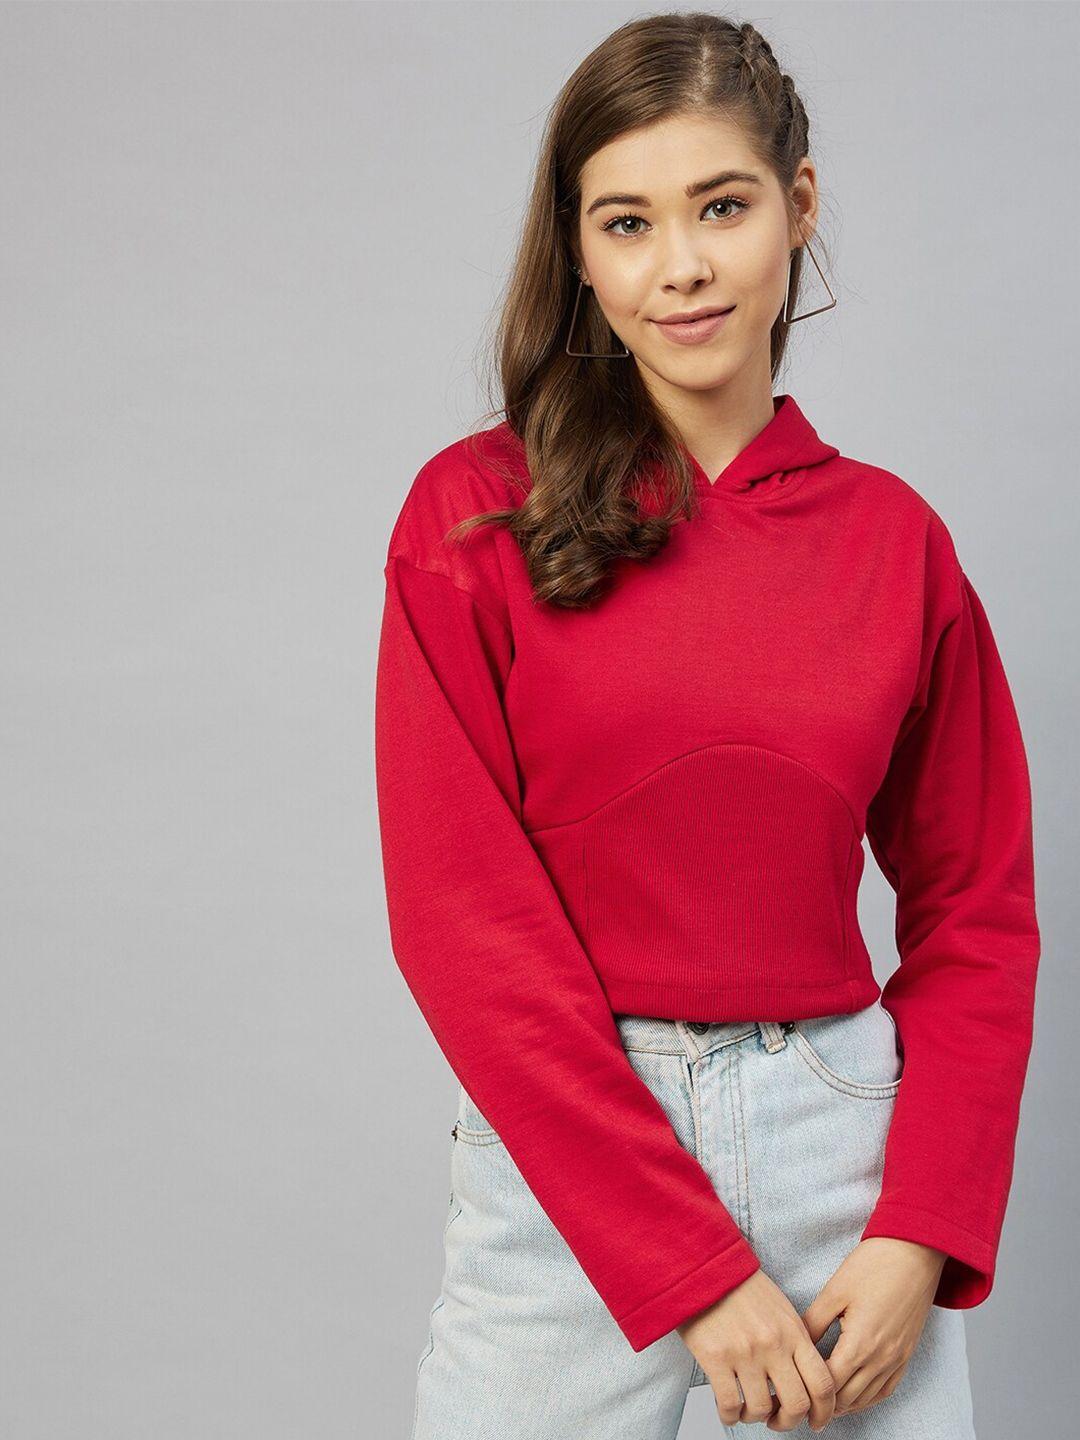 carlton london women red crop hooded sweatshirt